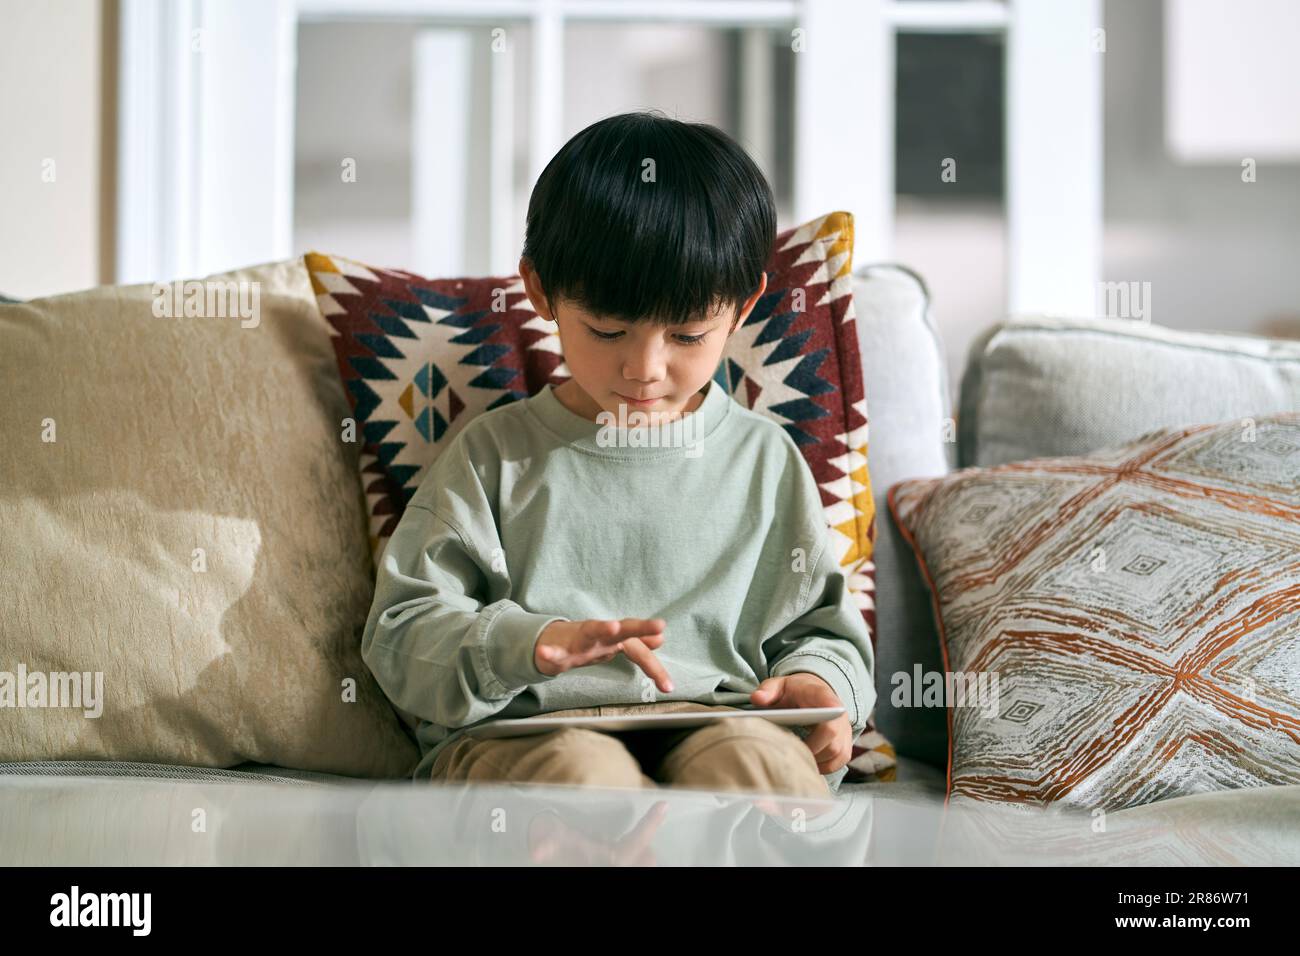 Fünf Jahre alter kleiner asiatischer Junge, der zu Hause auf dem Familientisch sitzt und einen digitalen Tablet-Computer benutzt Stockfoto